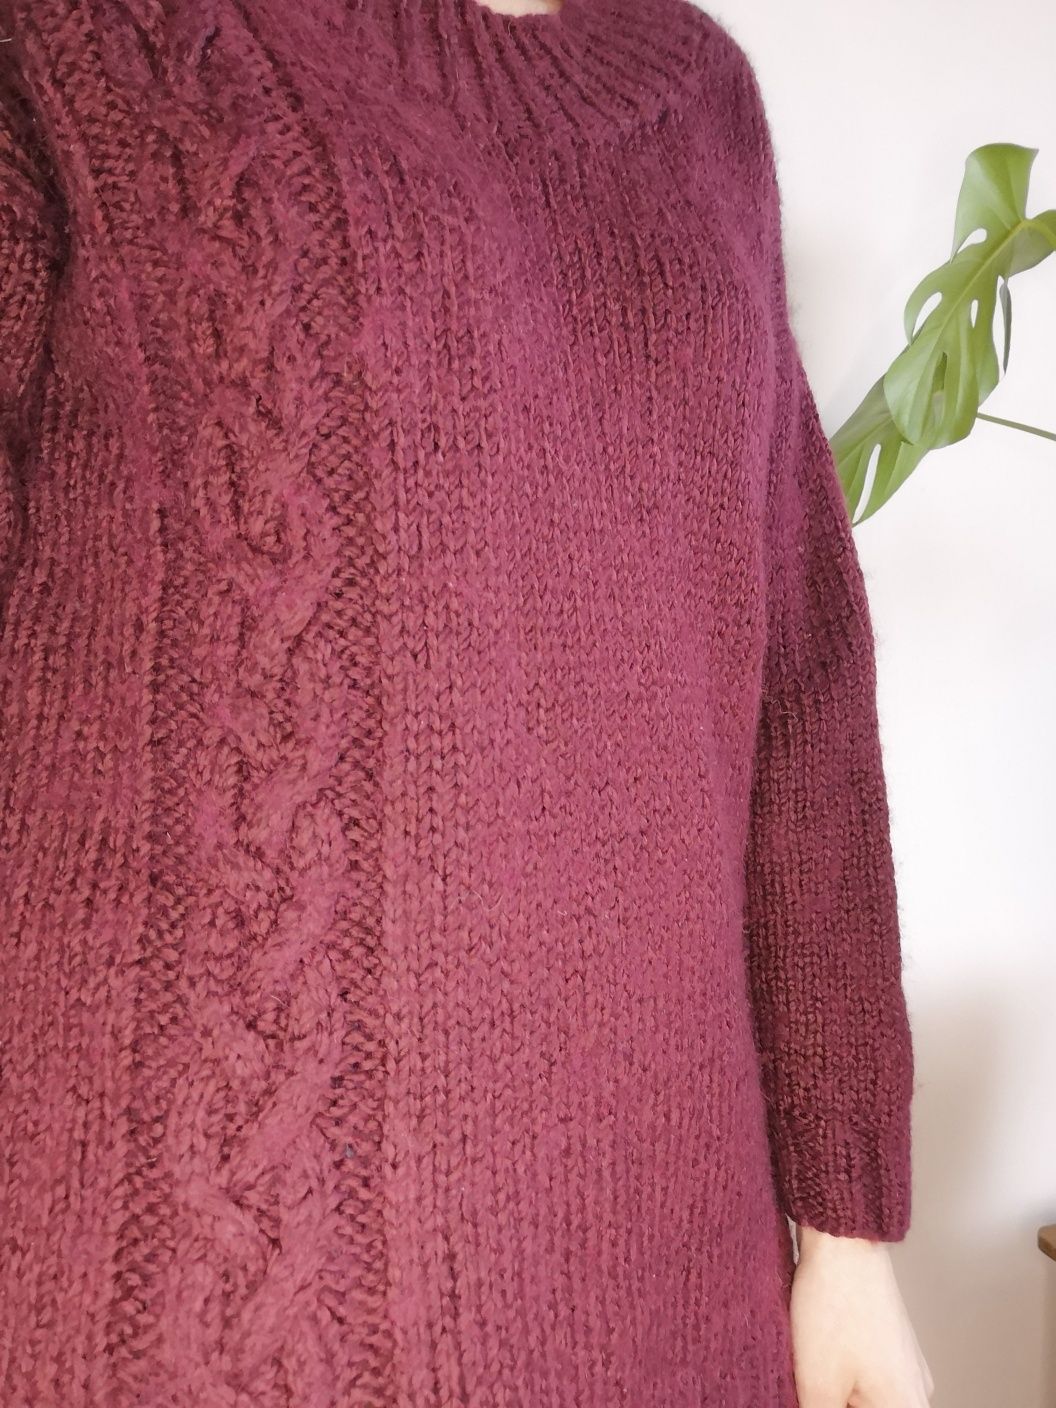 Gruby bordowy wełniany sweter oversize warkocze wełna moher handmade